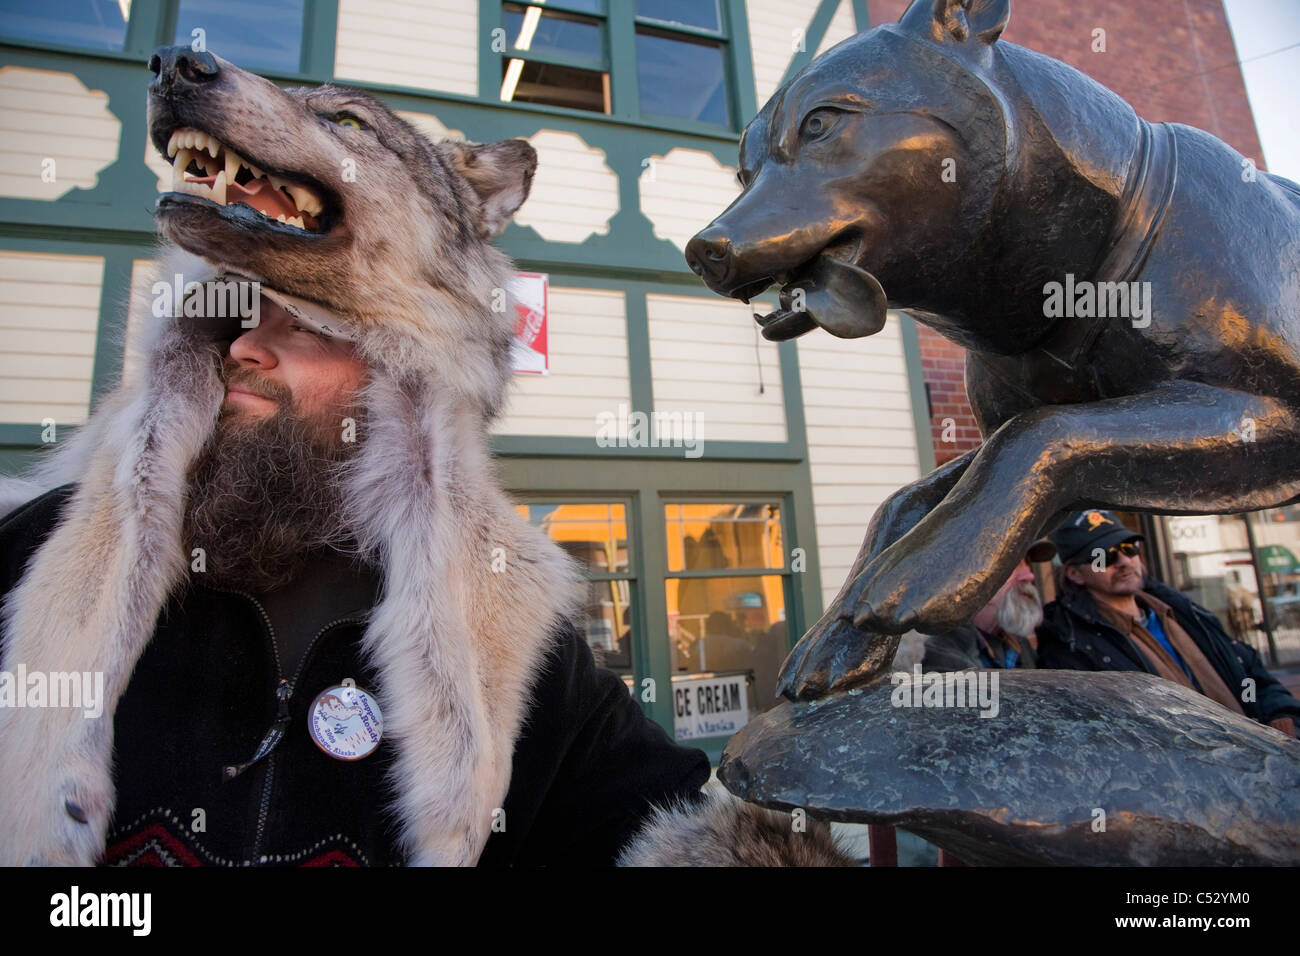 El hombre lobo vistiendo un sombrero se encuentra junto a una estatua de bronce de un perro de trineo en el centro de Anchorage, Alaska, Rendezvous Fur invierno Foto de stock